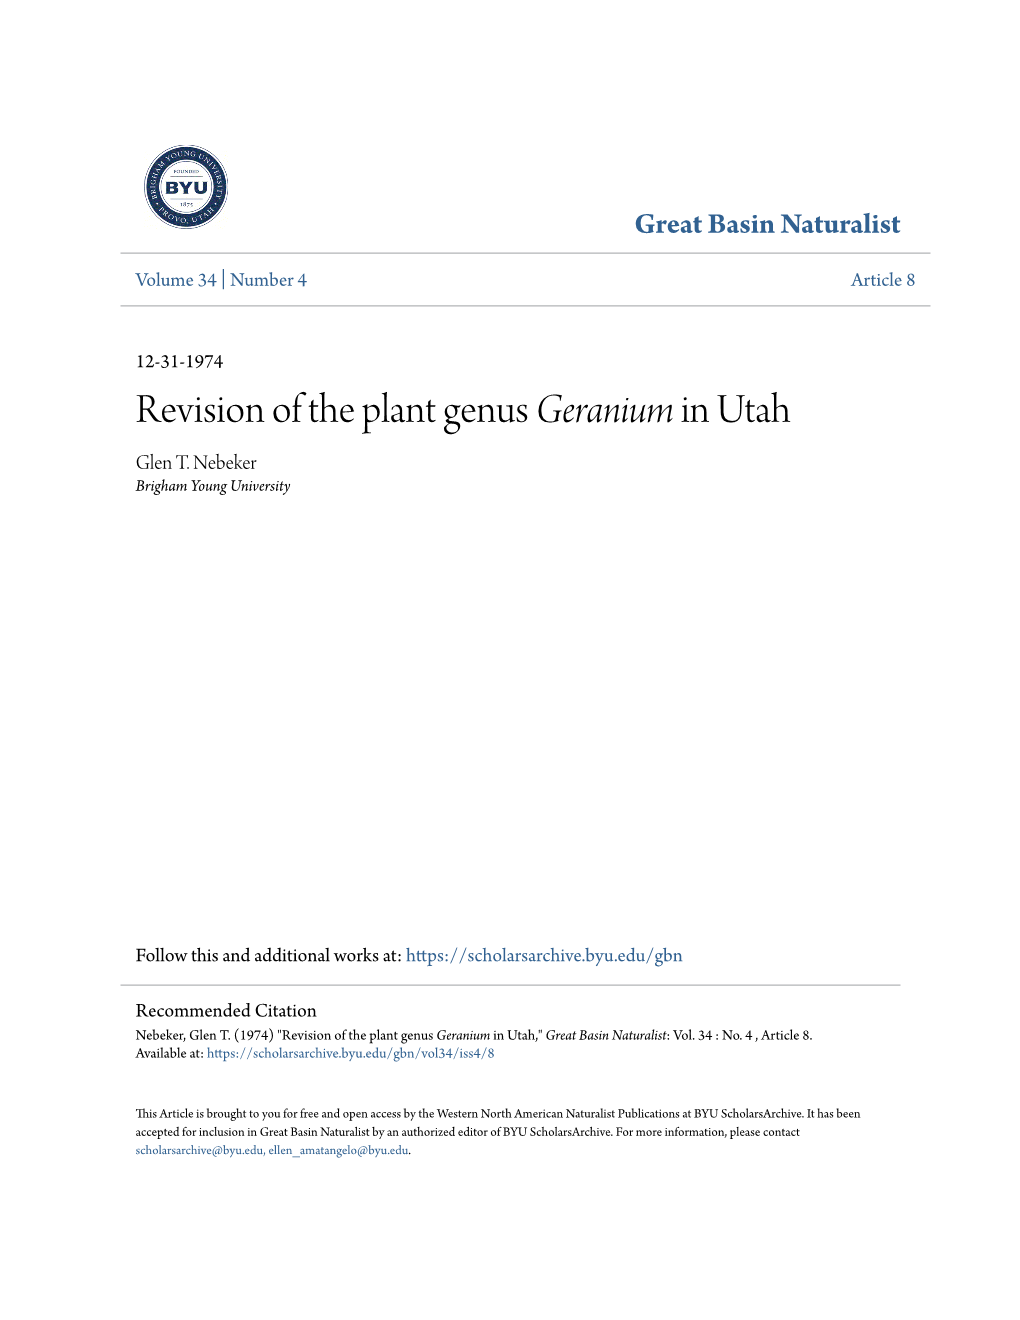 Revision of the Plant Genus Geranium in Utah Glen T